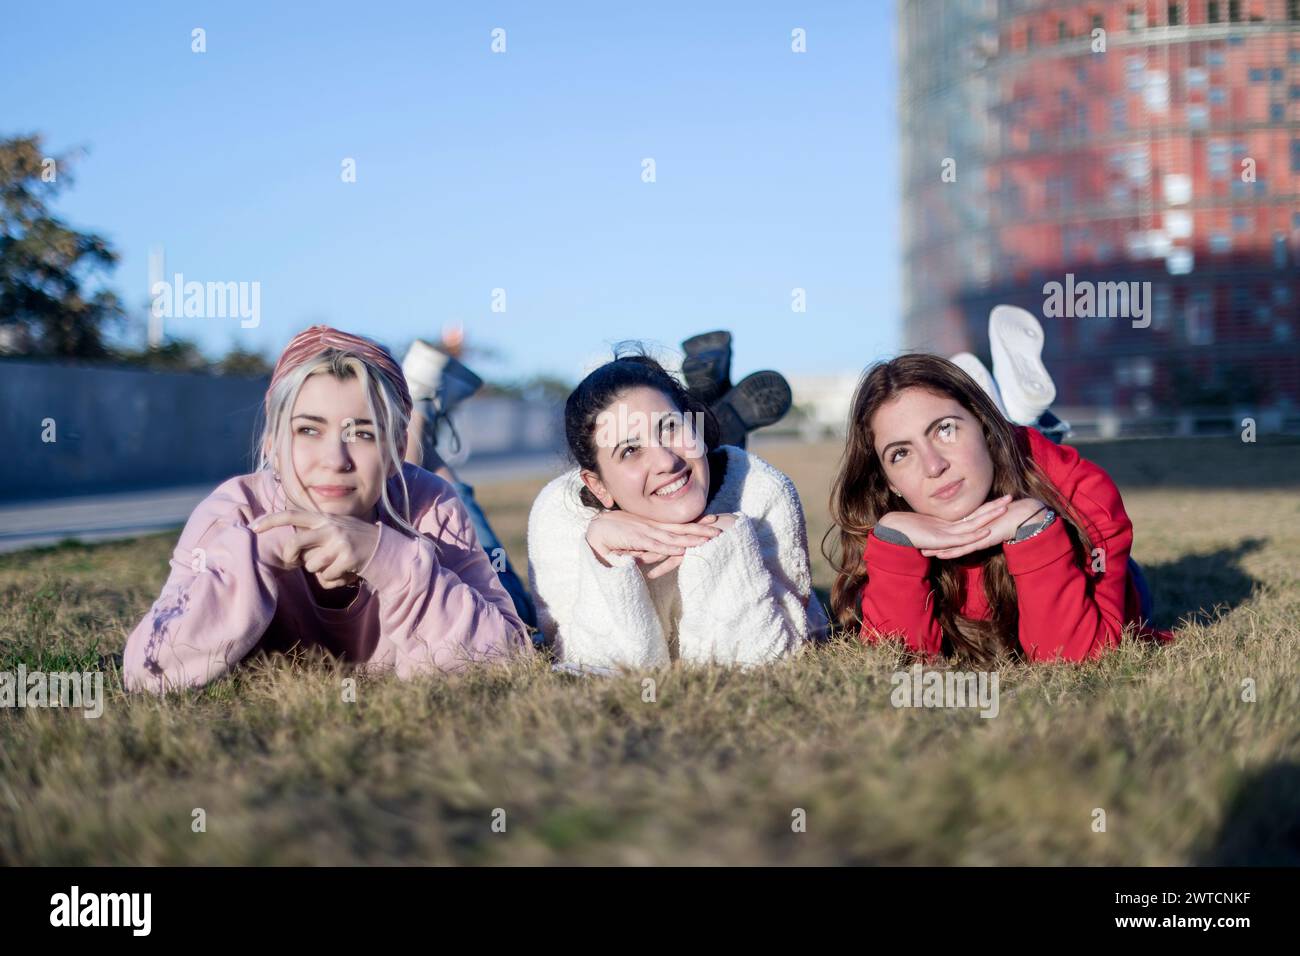 Trois jeunes femmes allongées sur l'estomac sur l'herbe, posant de manière ludique les mains sous le menton, avec un ciel clair et un fond urbain Banque D'Images